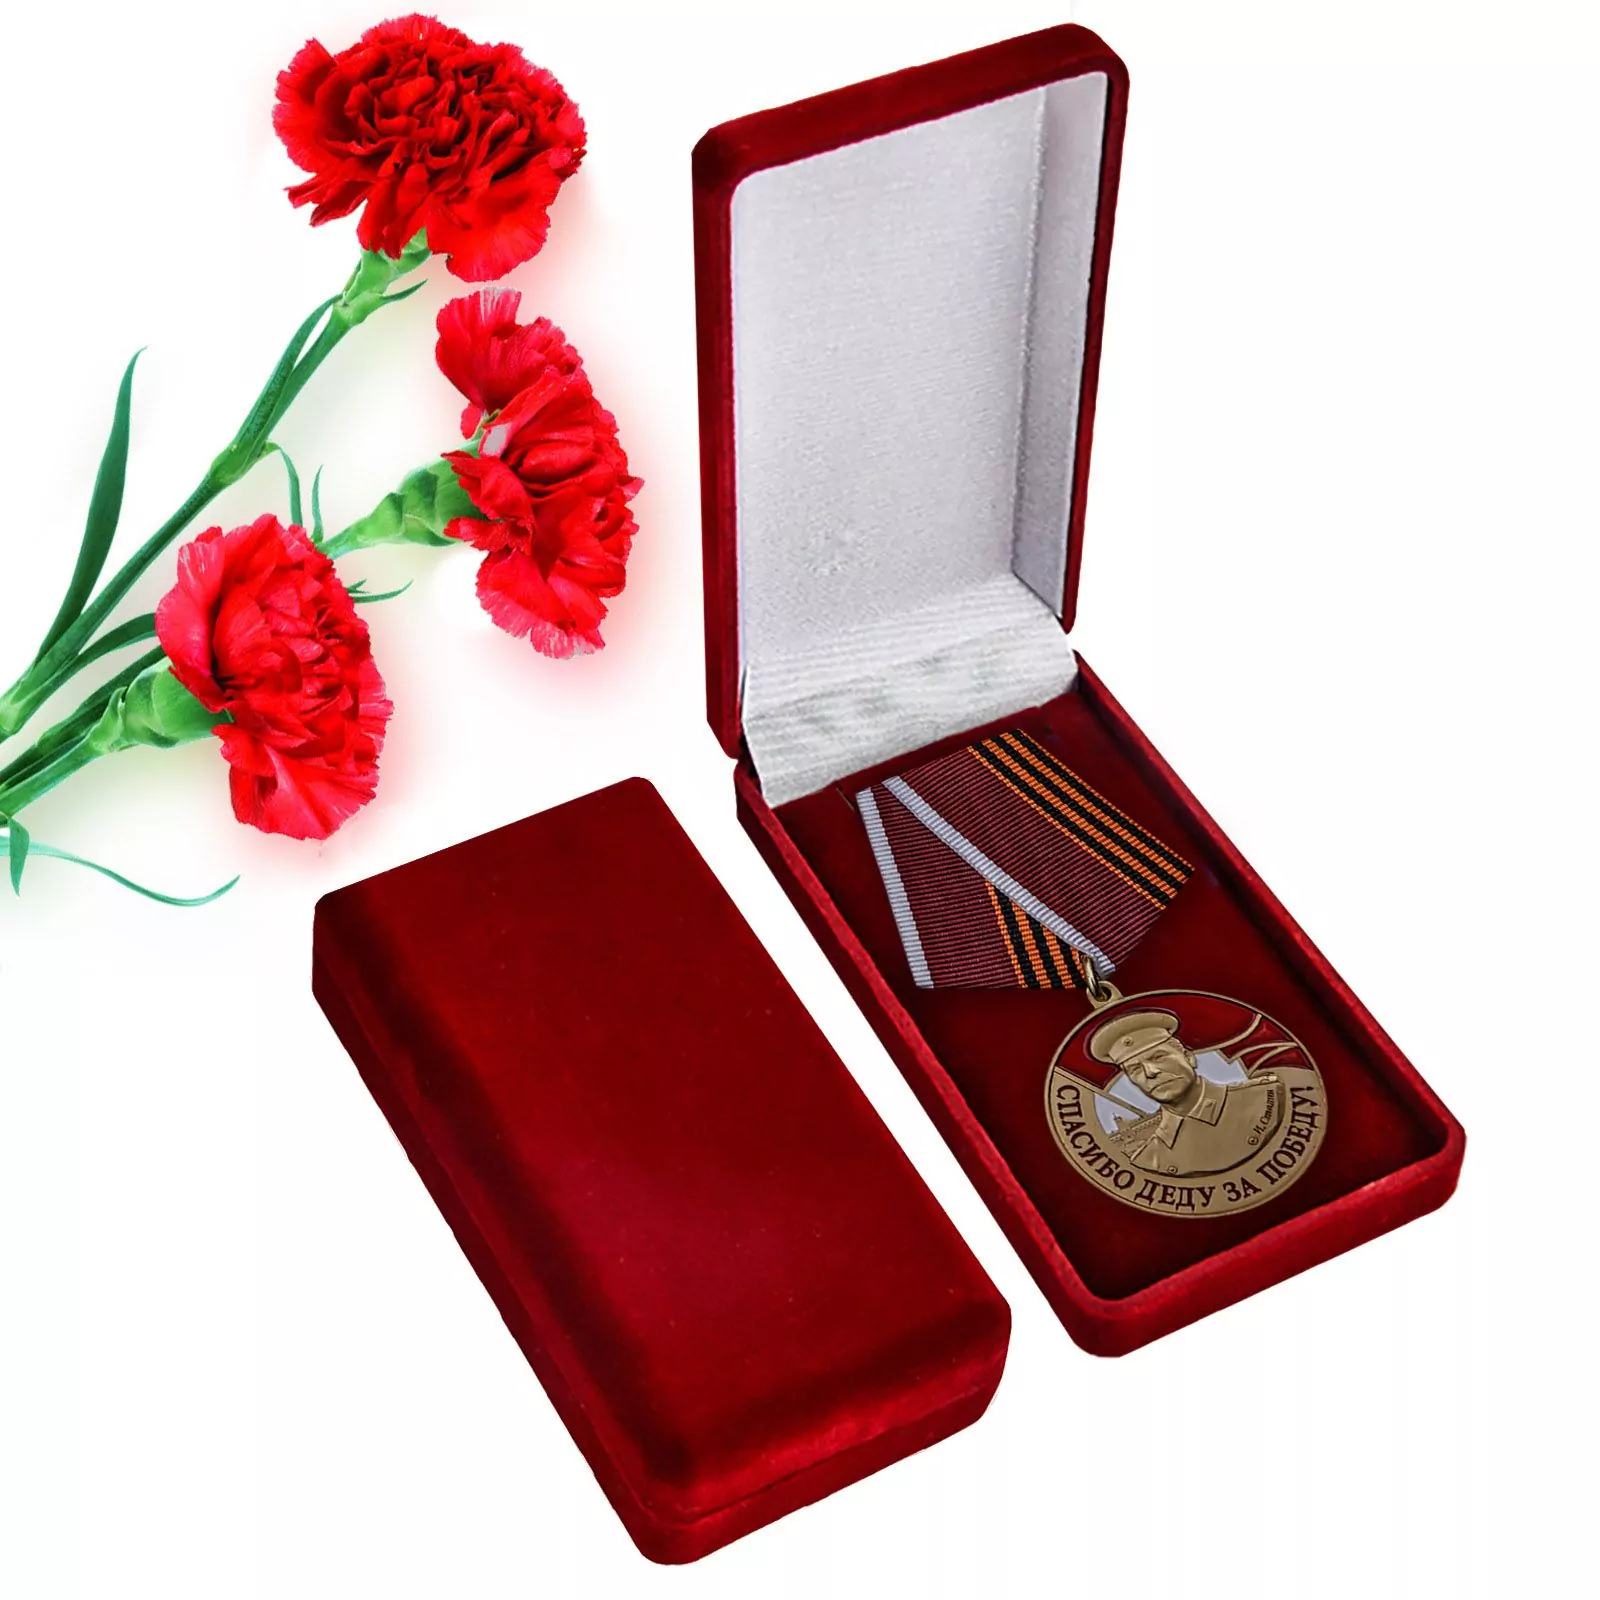 Латунная медаль со Сталиным "Спасибо деду за Победу"